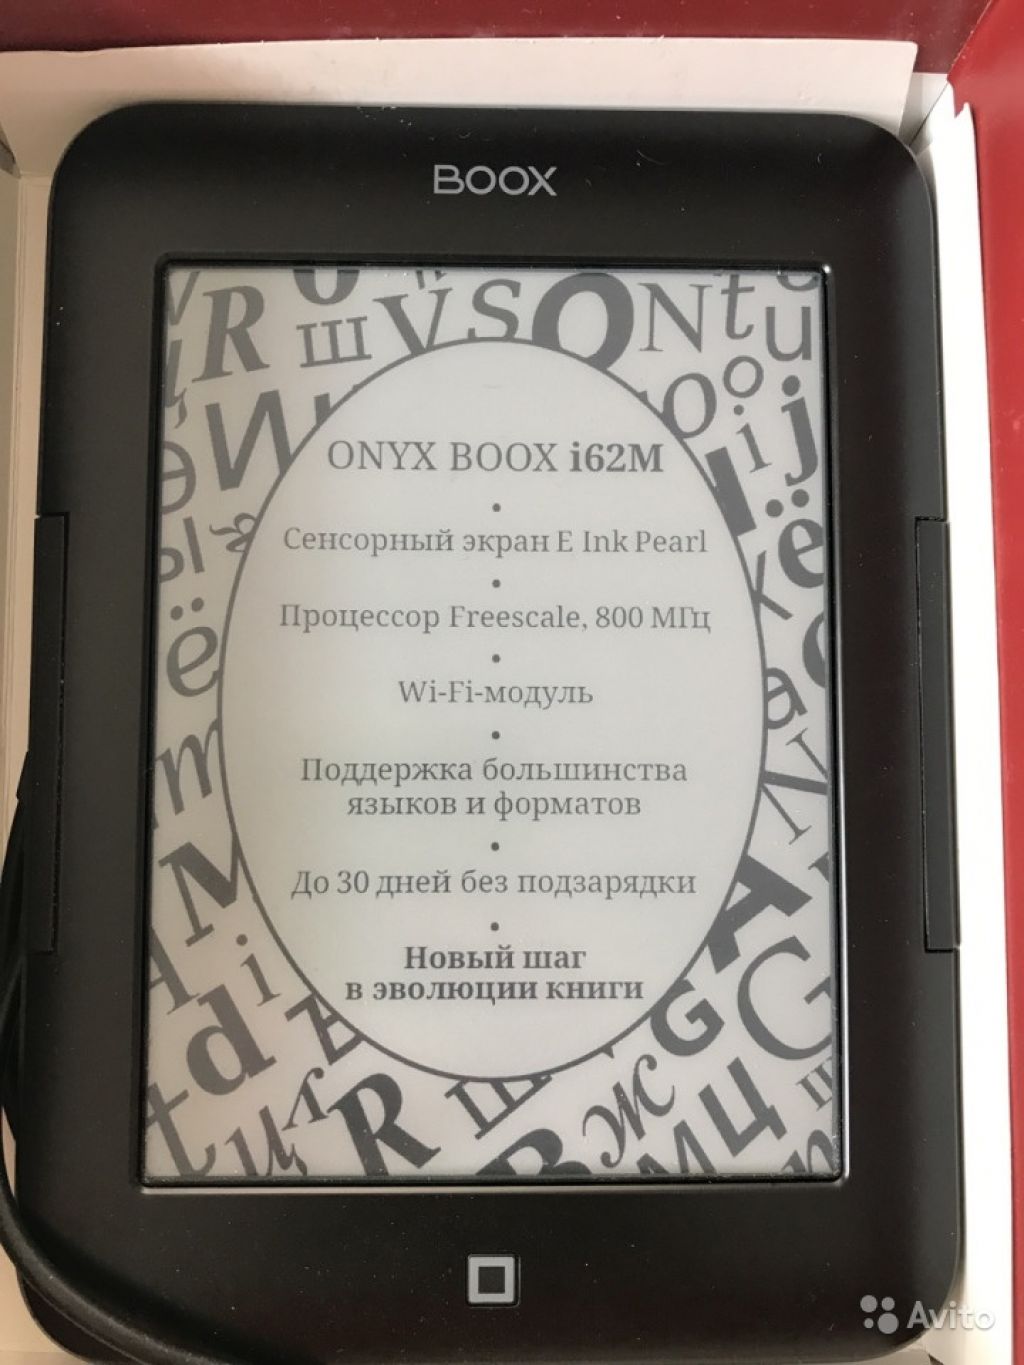 Электронная книга Onyx Book i62M victoria в Москве. Фото 1